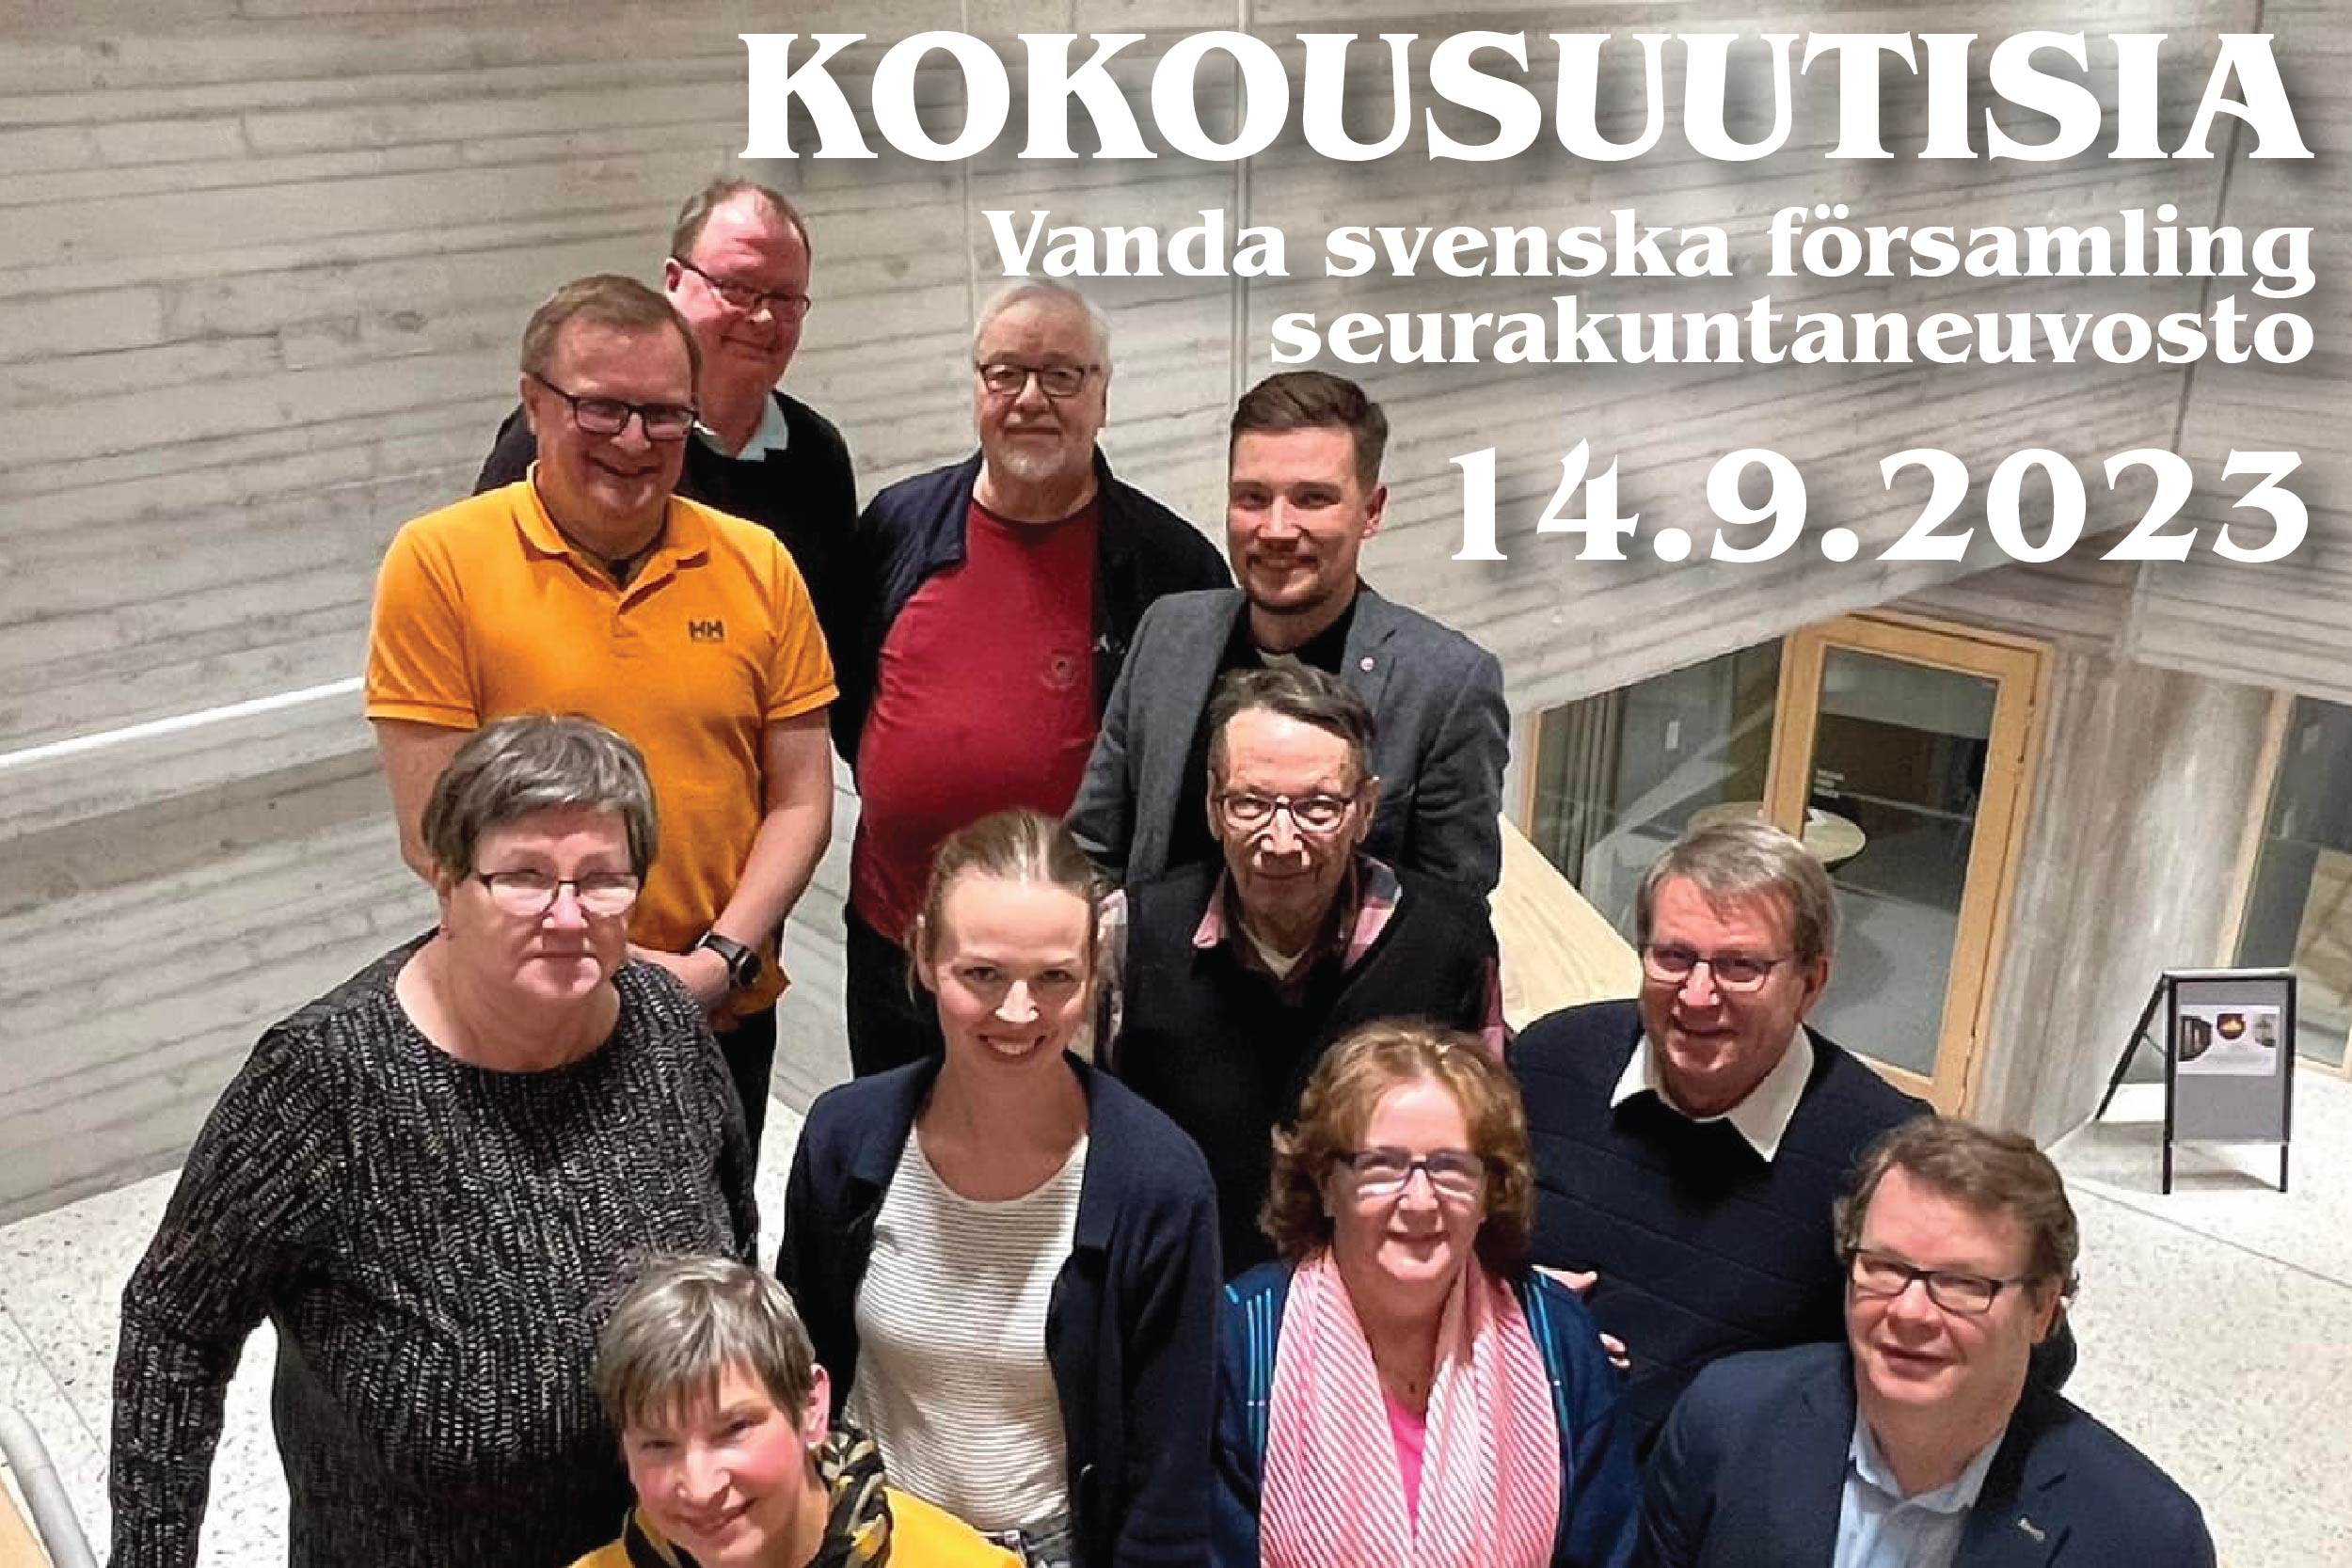 Teksti kokousuutisia Vanda svenska församling seurakuntaneuvosto 14.9.2023 ja joukko ihmisiä eli neuvoston ...